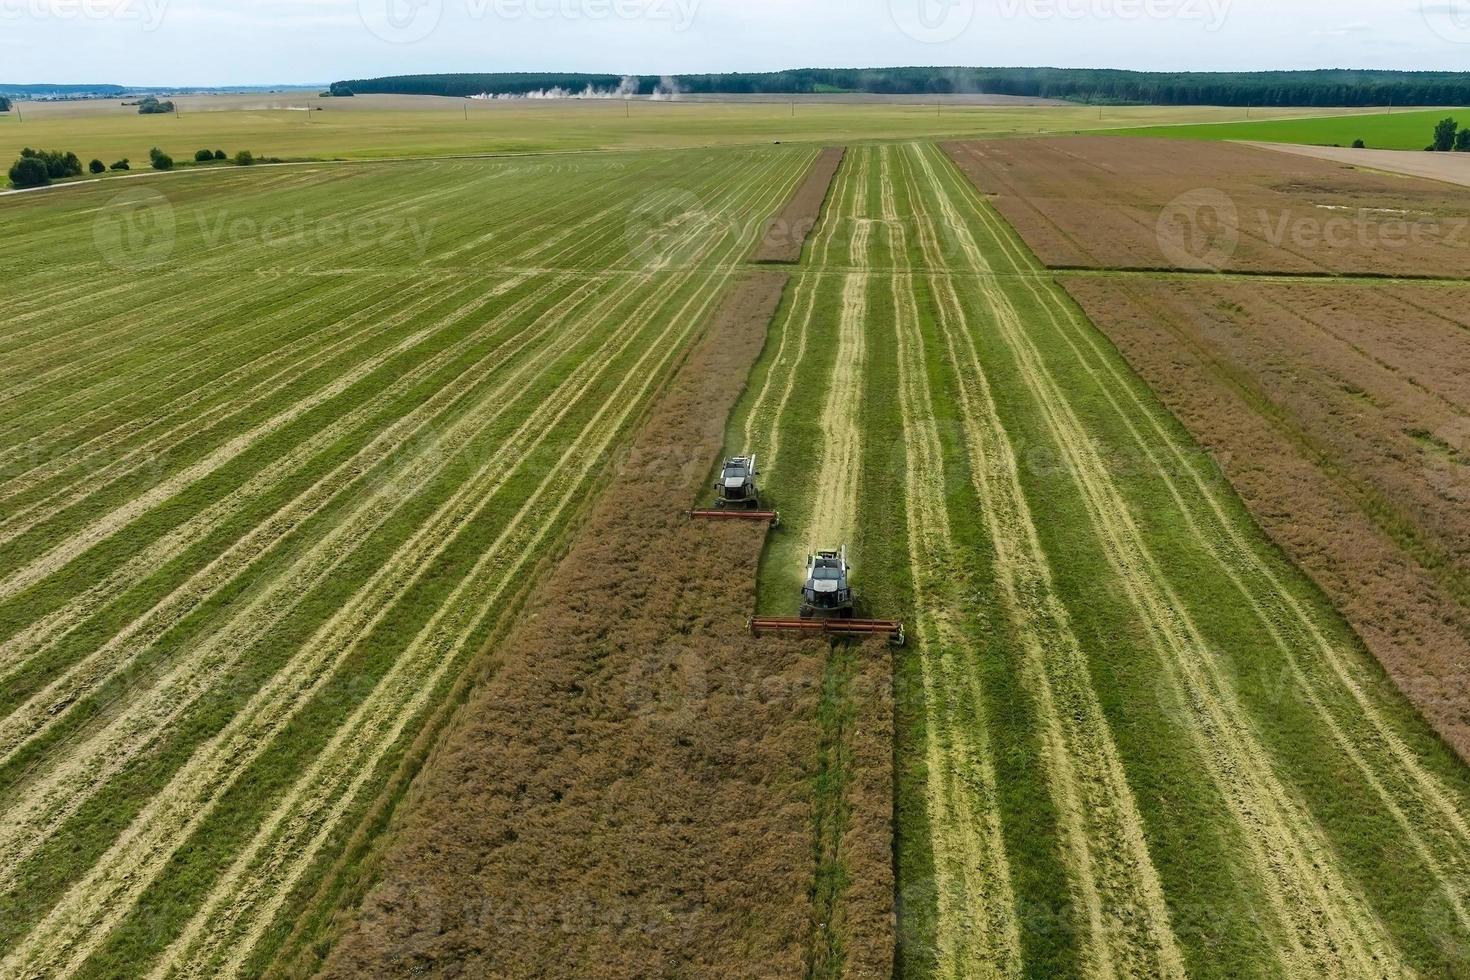 vista aérea sobre colheitadeiras pesadas modernas removem o pão de trigo maduro no campo. trabalho agrícola sazonal foto